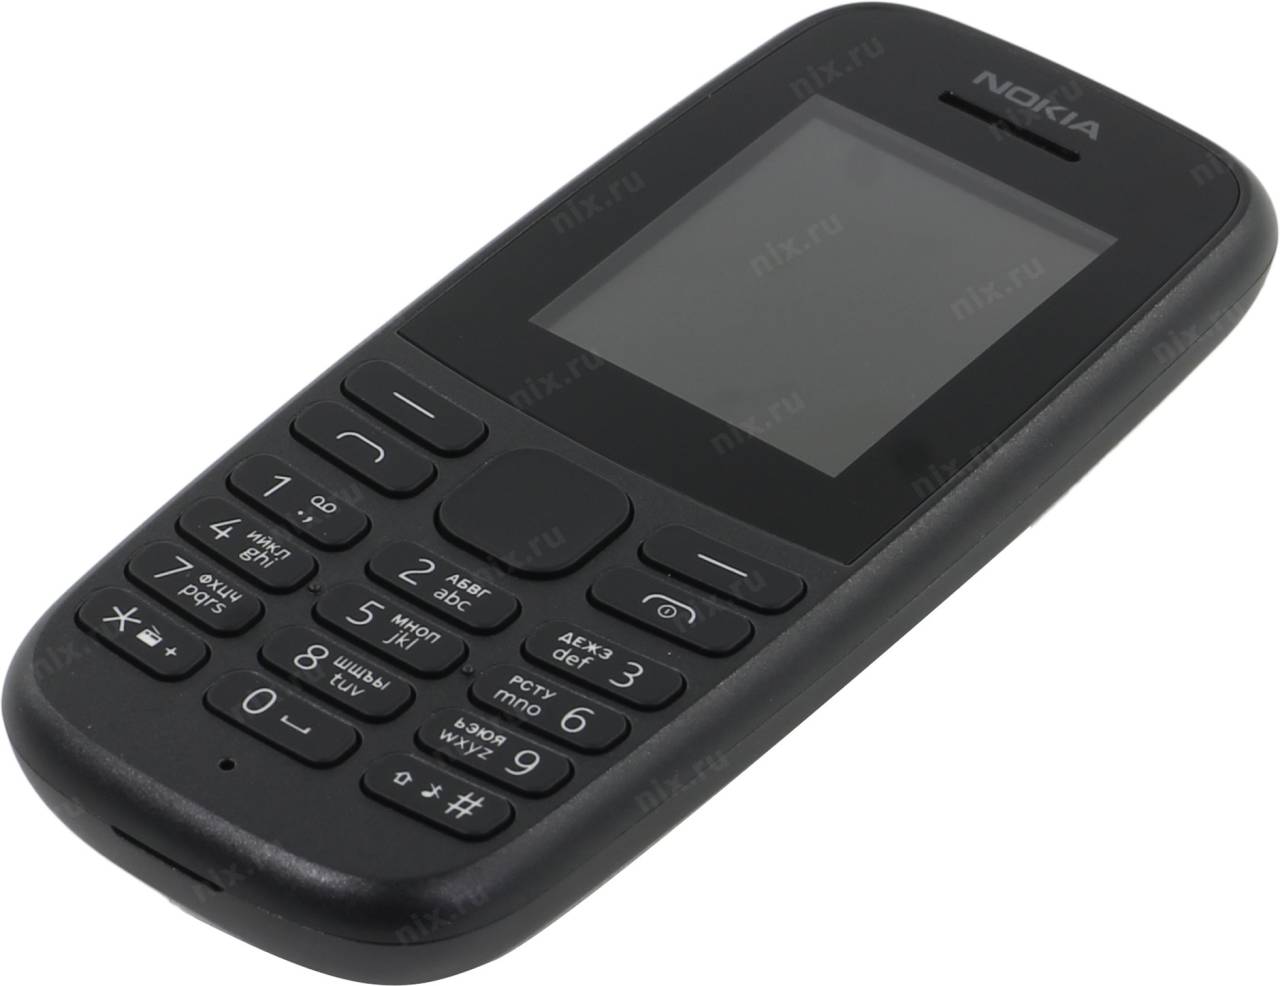   NOKIA 105 [16KIGB01A19] TA-1203 Black (DualBand, 1.77 160x120, 4Mb)